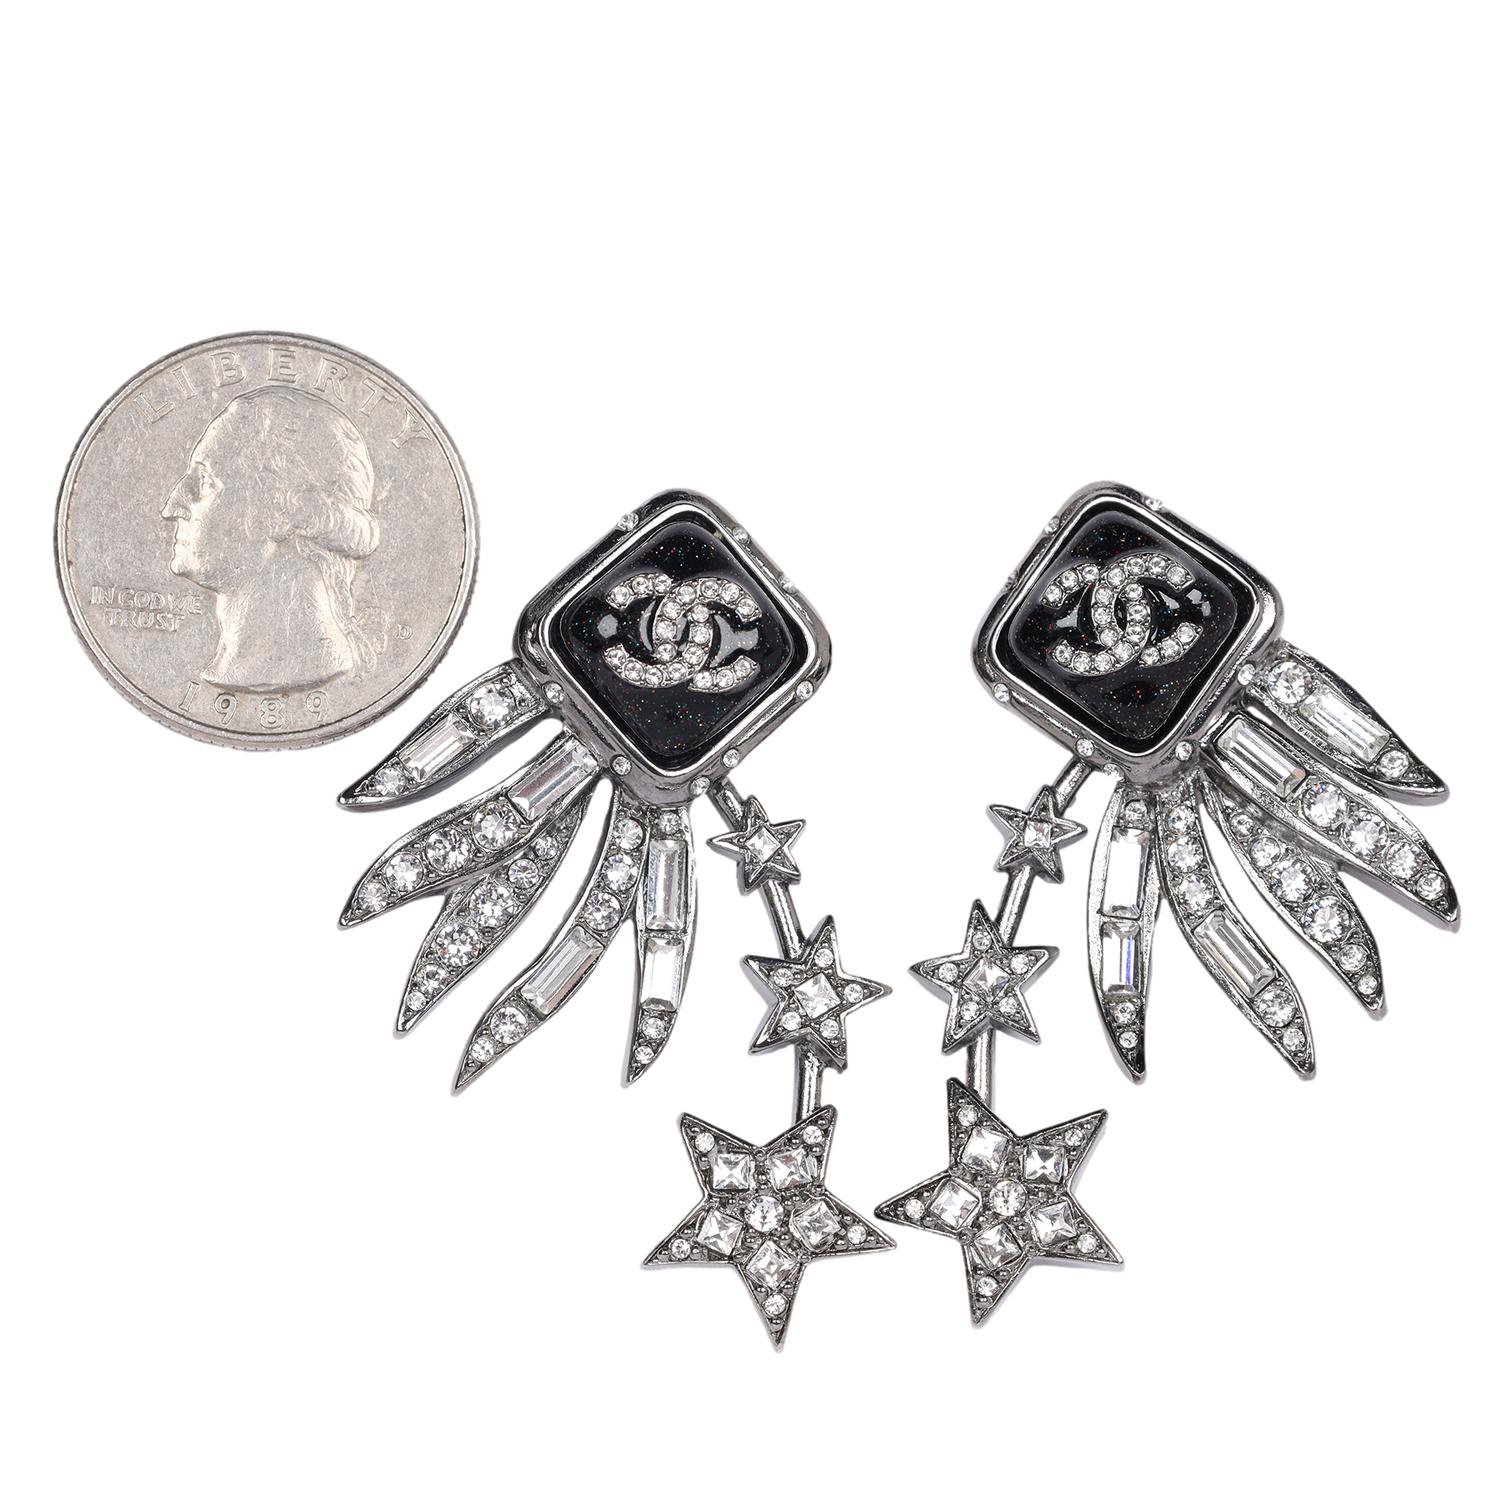 Authentiques boucles d'oreilles percées Chanel avec logo CC en étoile argentée et strass. 

Fabriqué en France  Marqué C21S

2.0 